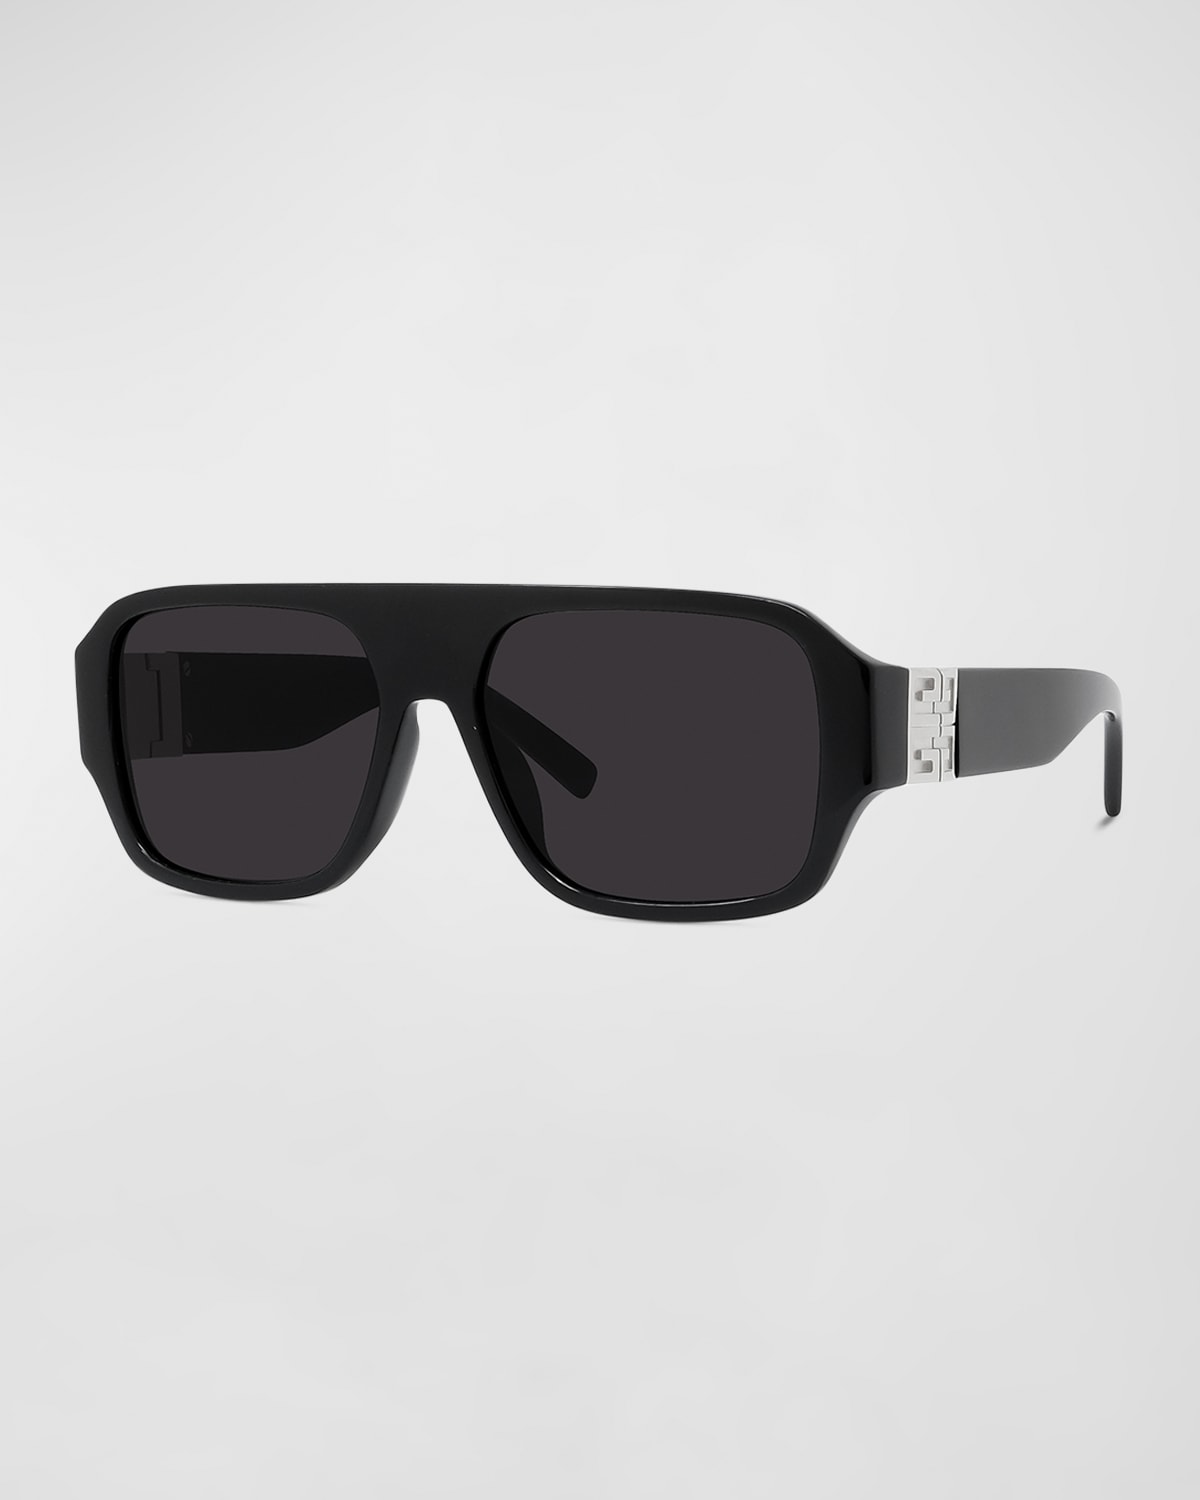 Givenchy Square Acetate Sunglasses In Blko/smk